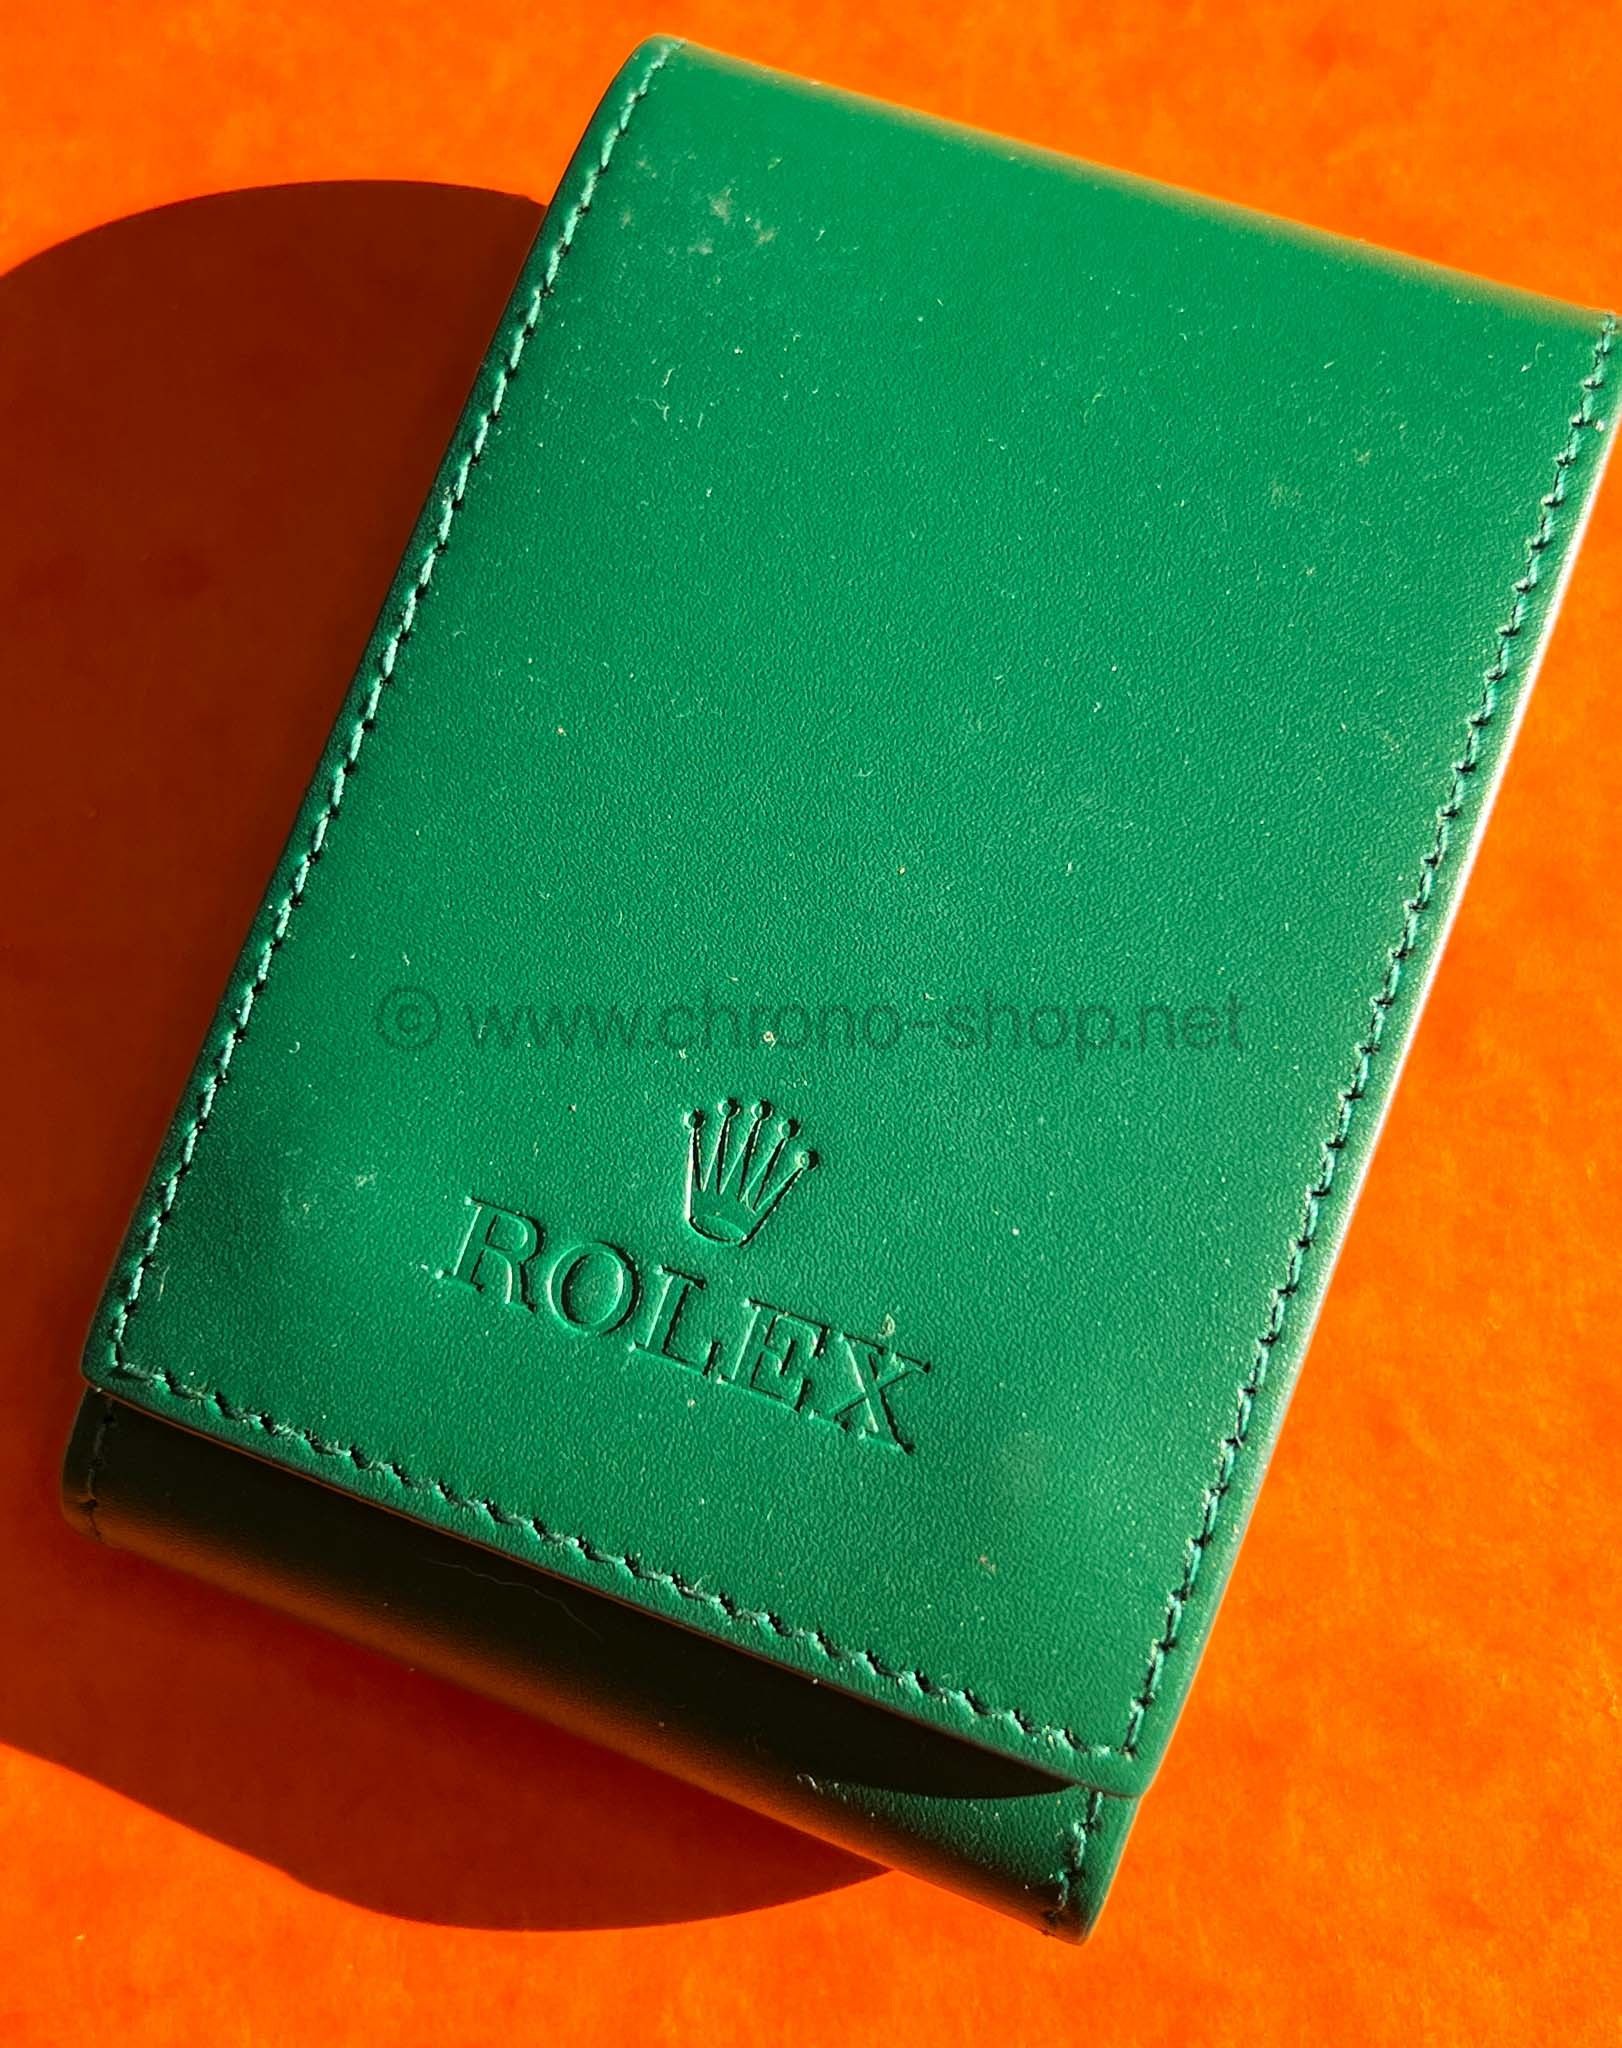 Rolex travel Service Center Premium holder case watches Datejust,Submariner,Gmt,Daytona,Explorer,AirKing